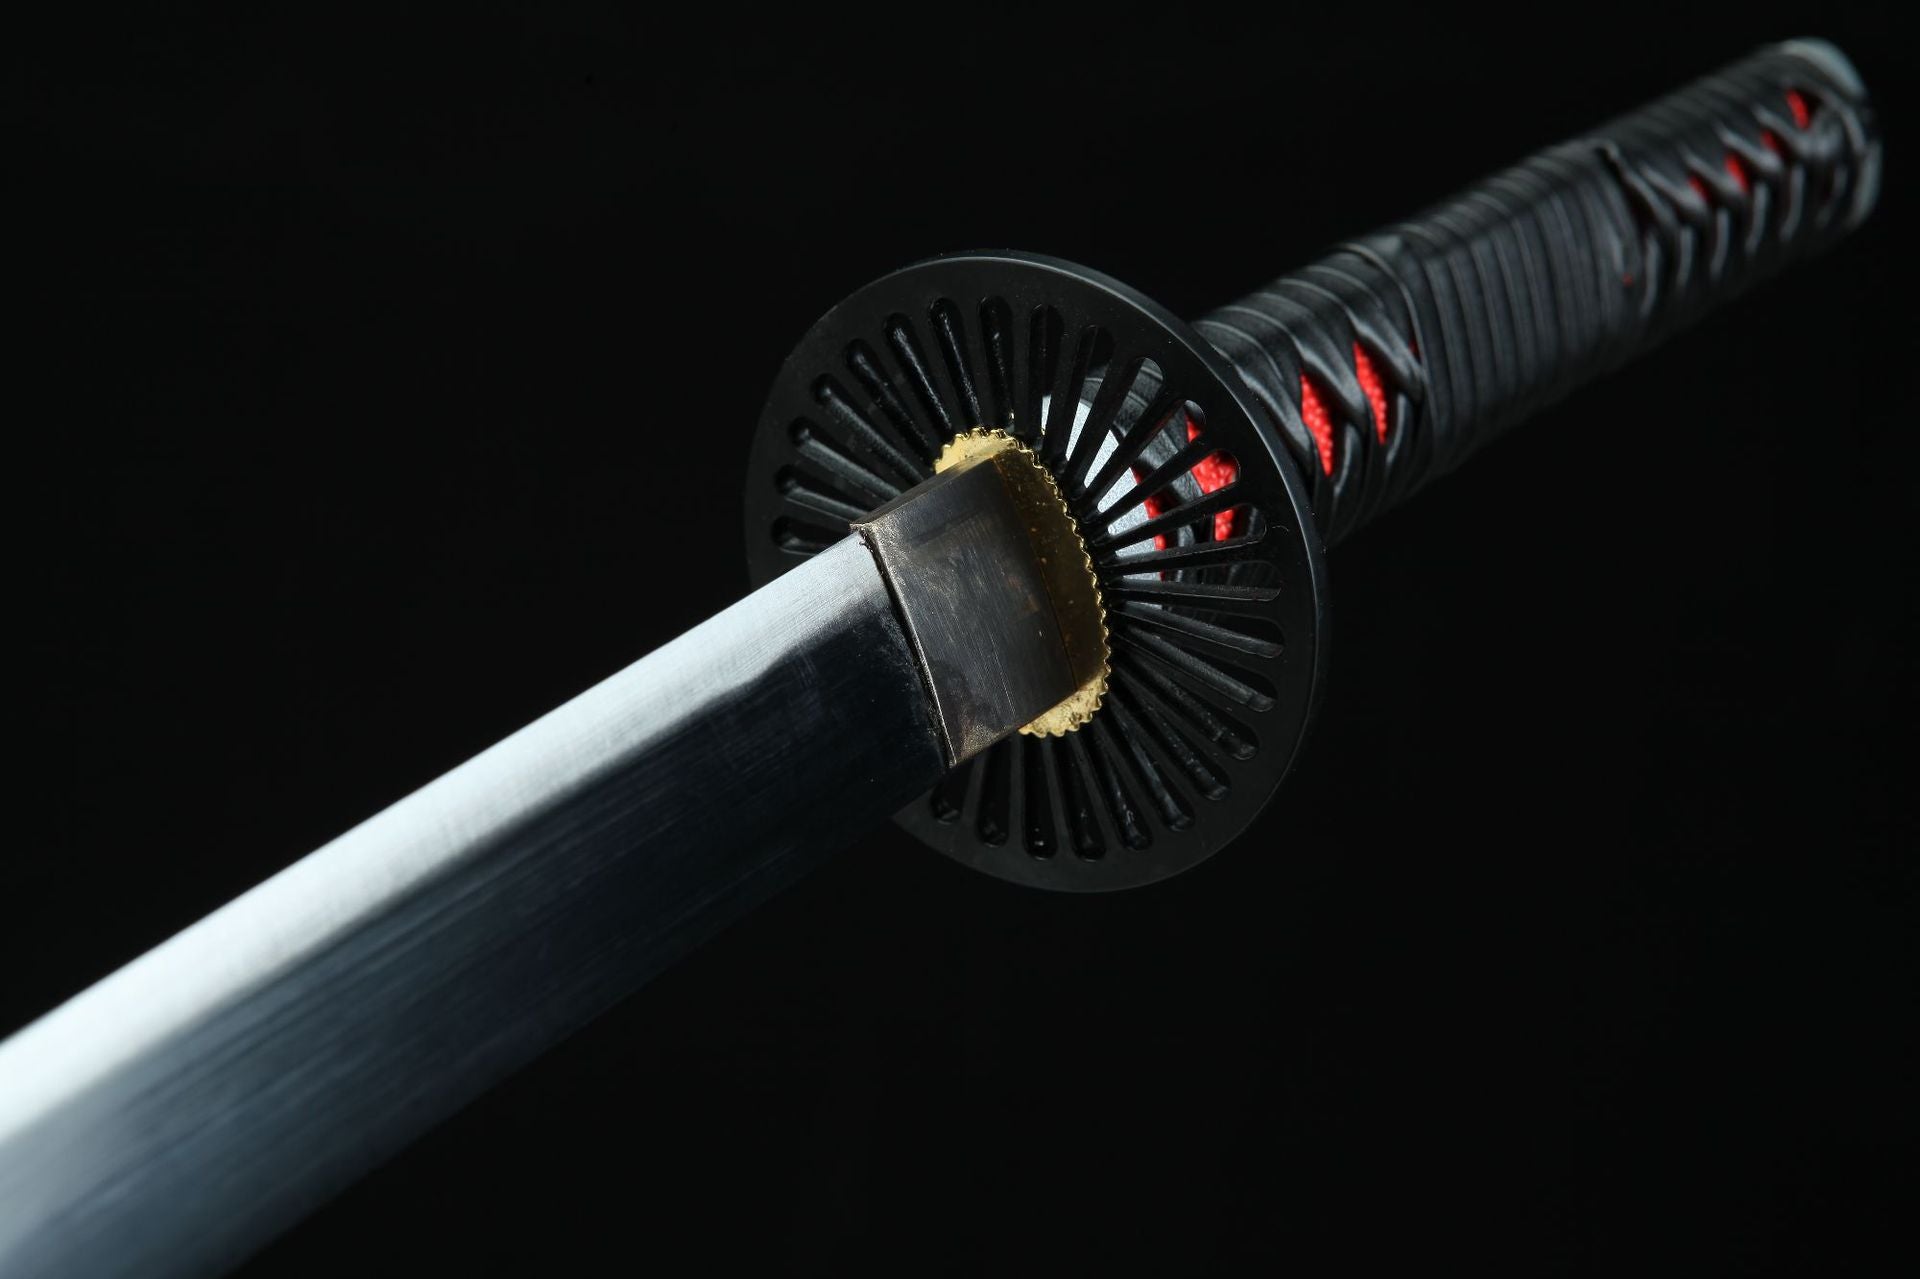 The circular tsuba of Tanjiro's Nichirin Sword